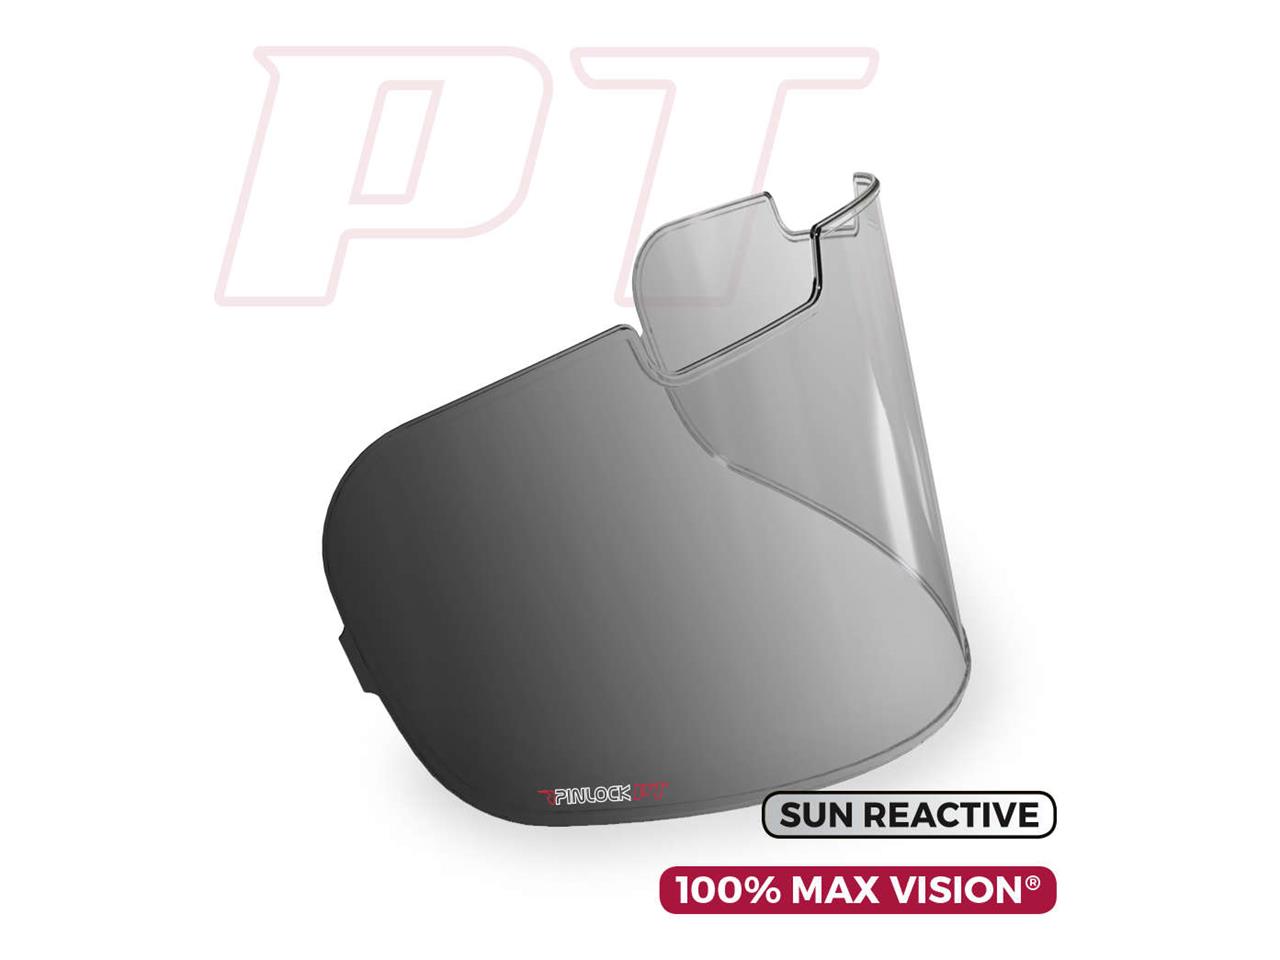 Ecran pinlock 100% Max Vision type VAS marque Arai